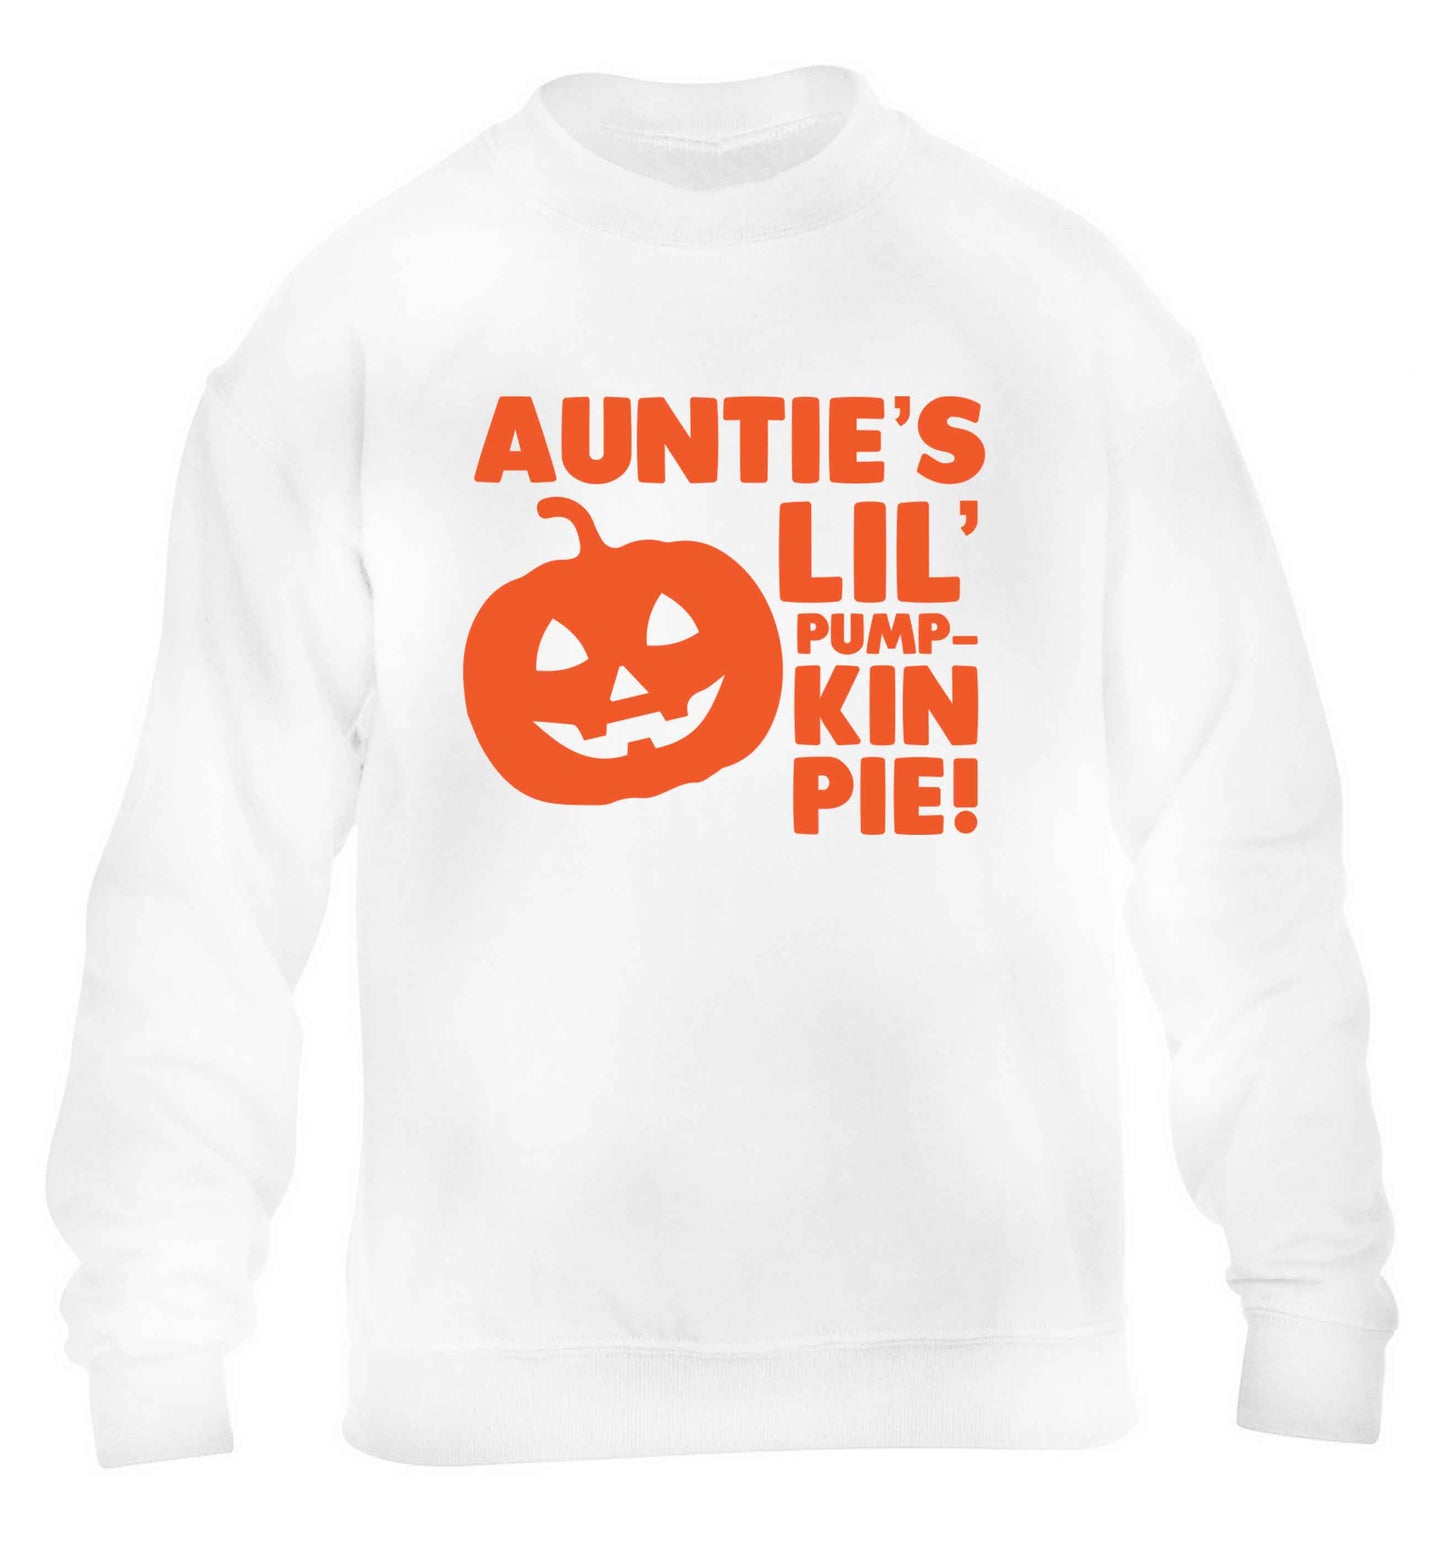 Auntie's lil' pumpkin pie children's white sweater 12-13 Years